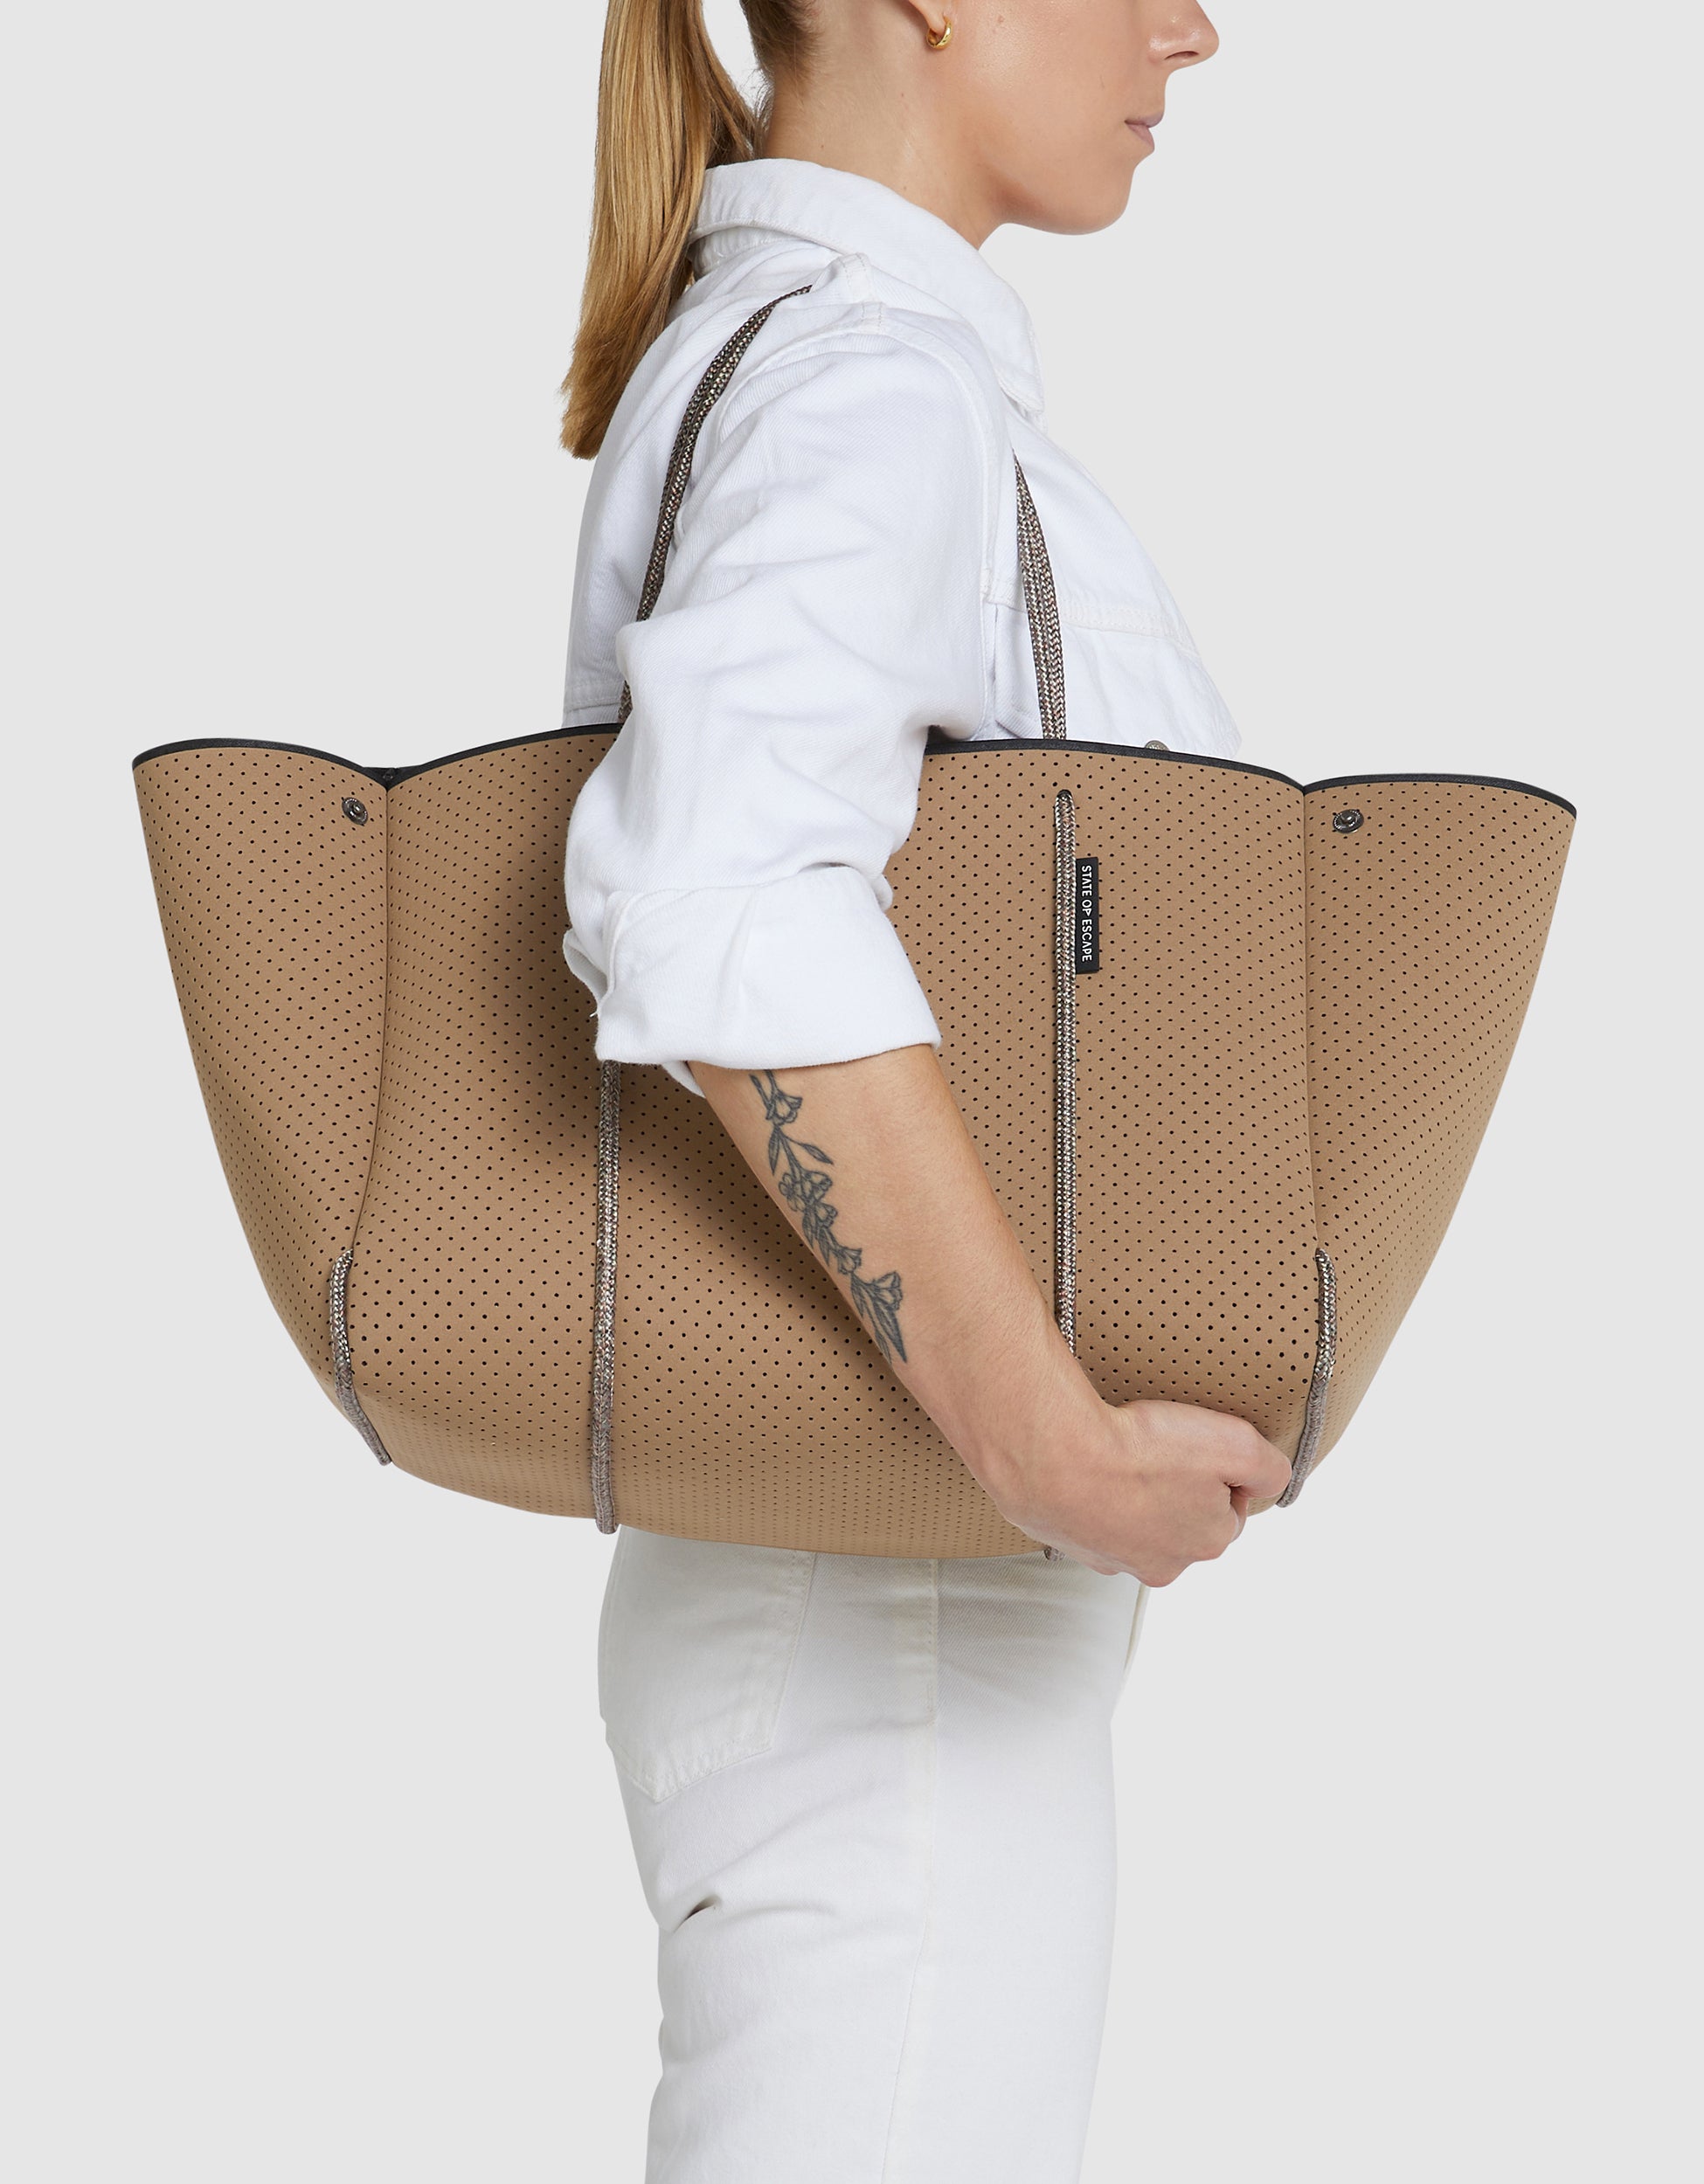 Australian Designer Tote Bags | The Escape™ tote - State of Escape